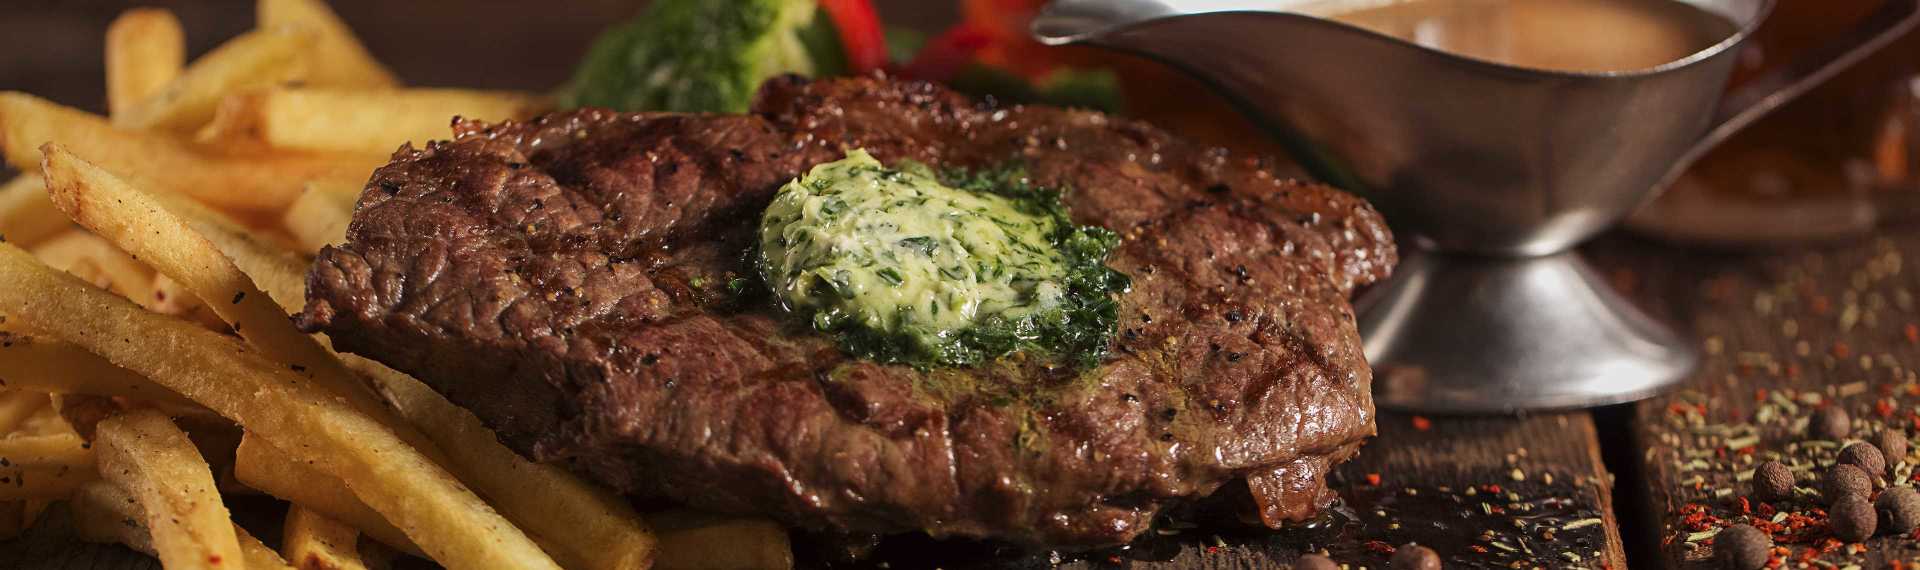 Steak essen für Junggesellenabschied